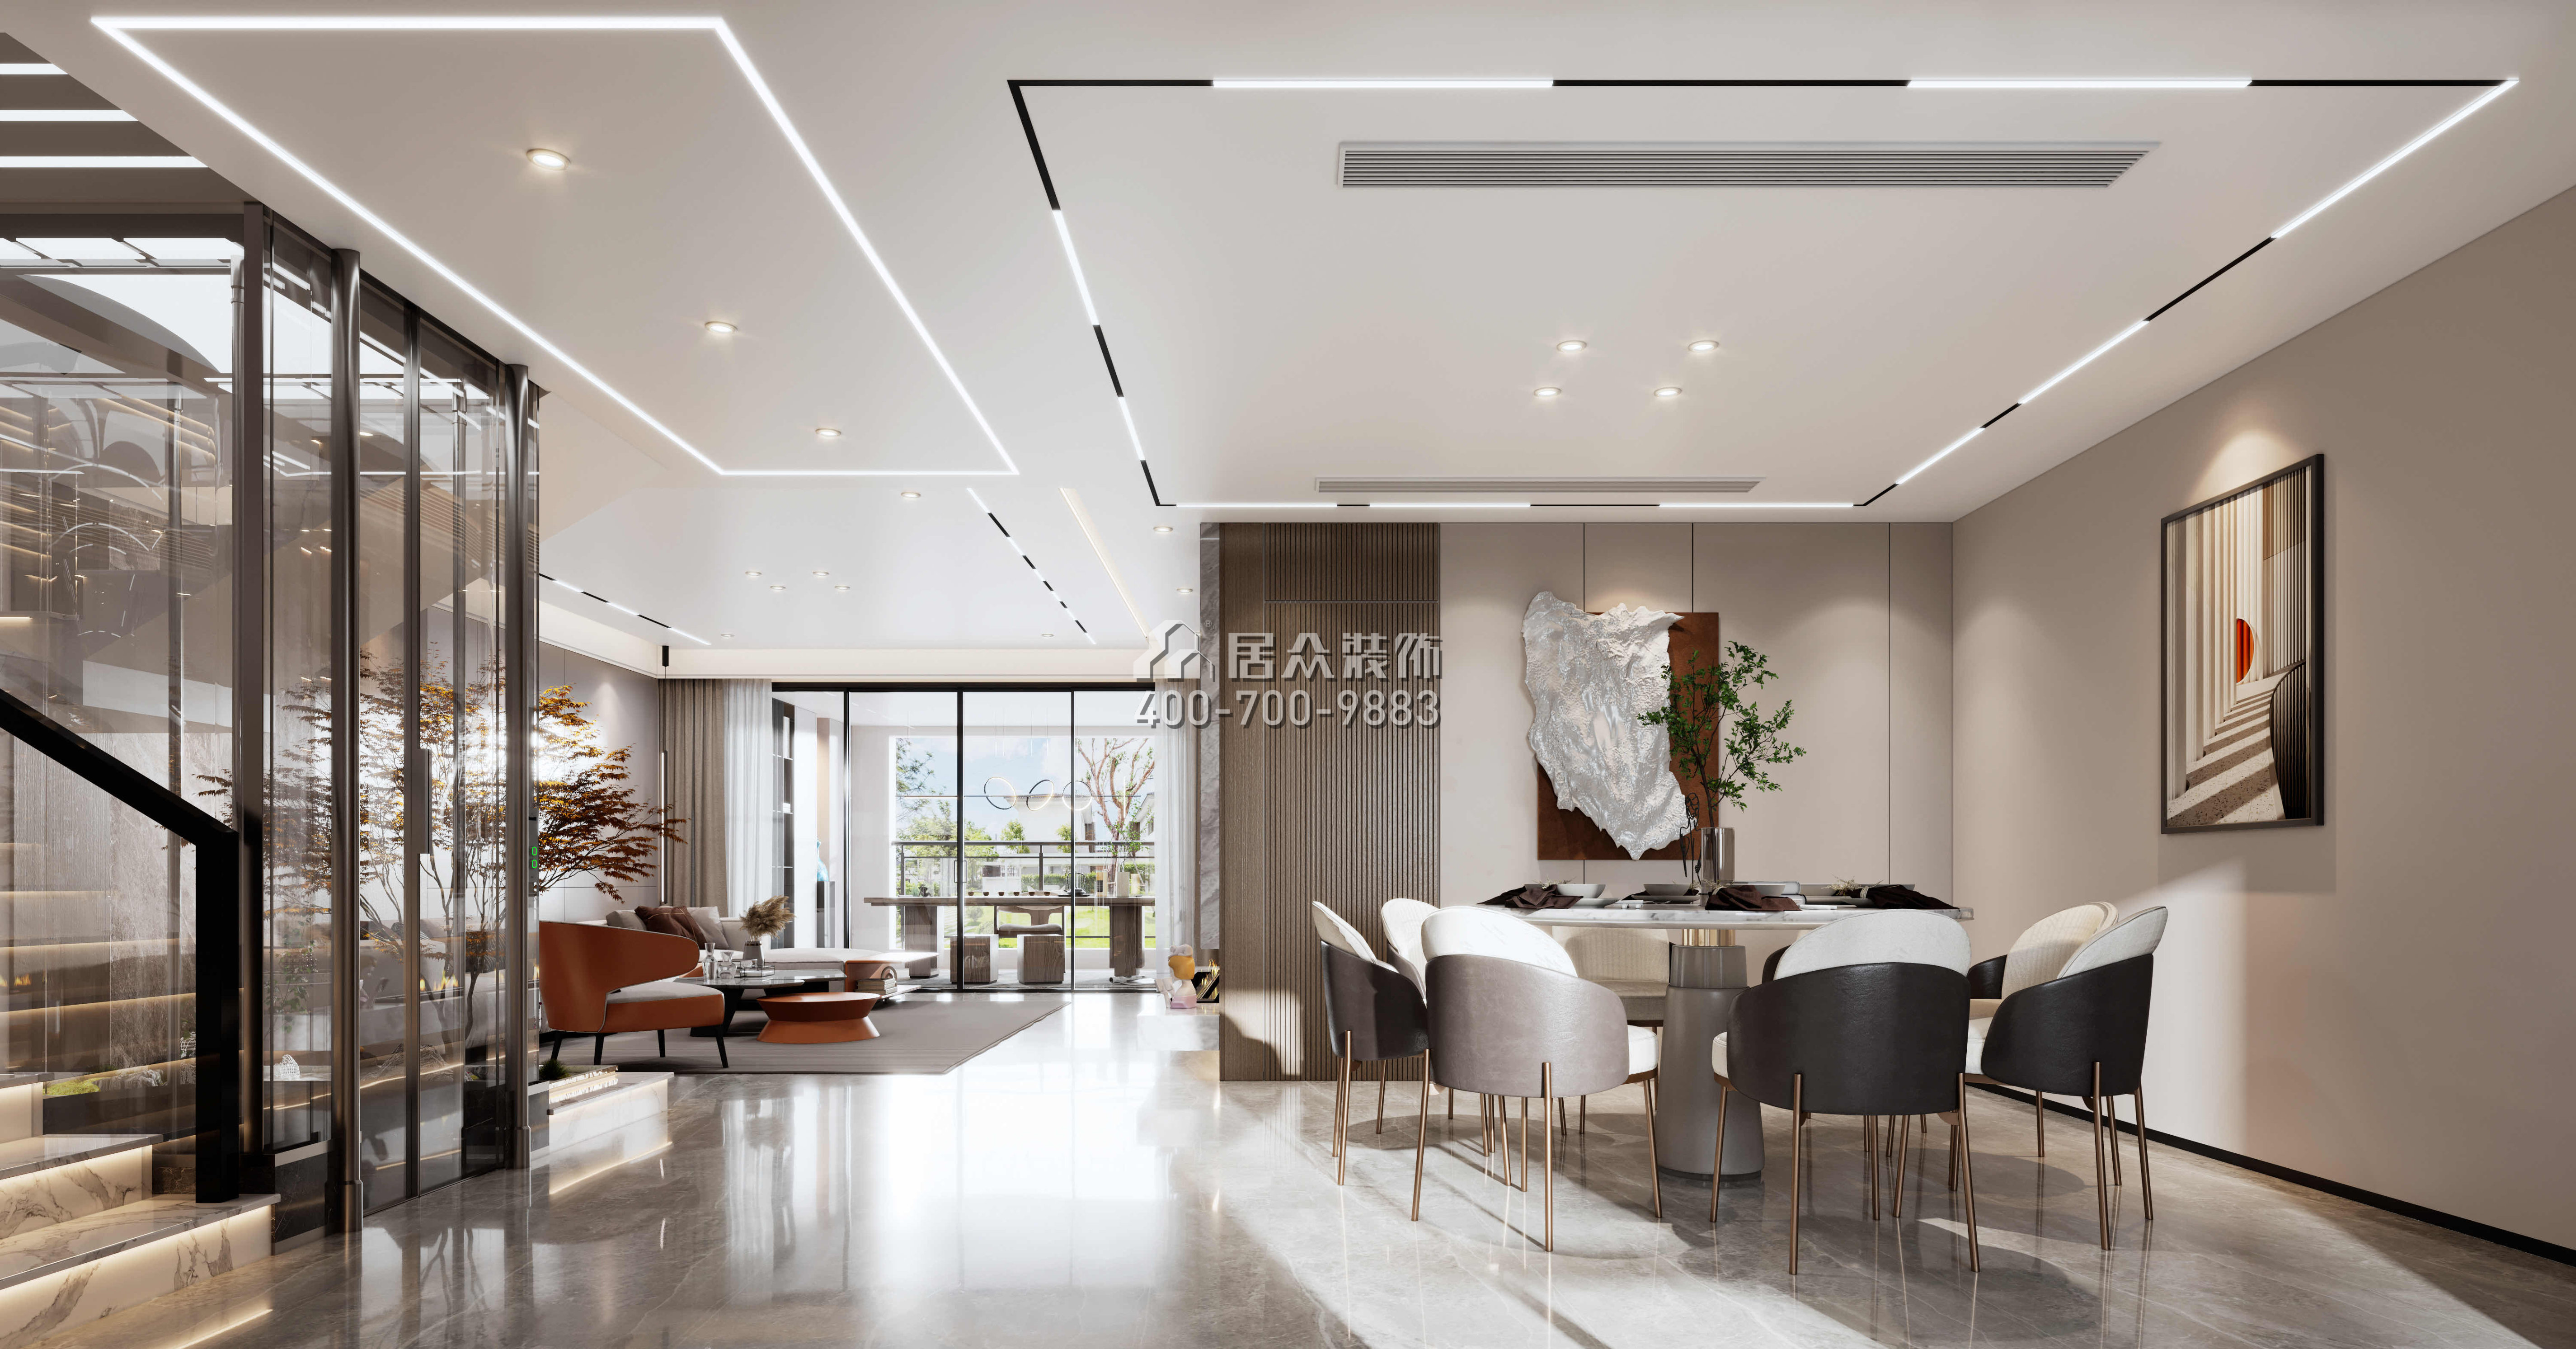 金天地悅灣450平方米現代簡約風格疊墅戶型餐廳裝修效果圖